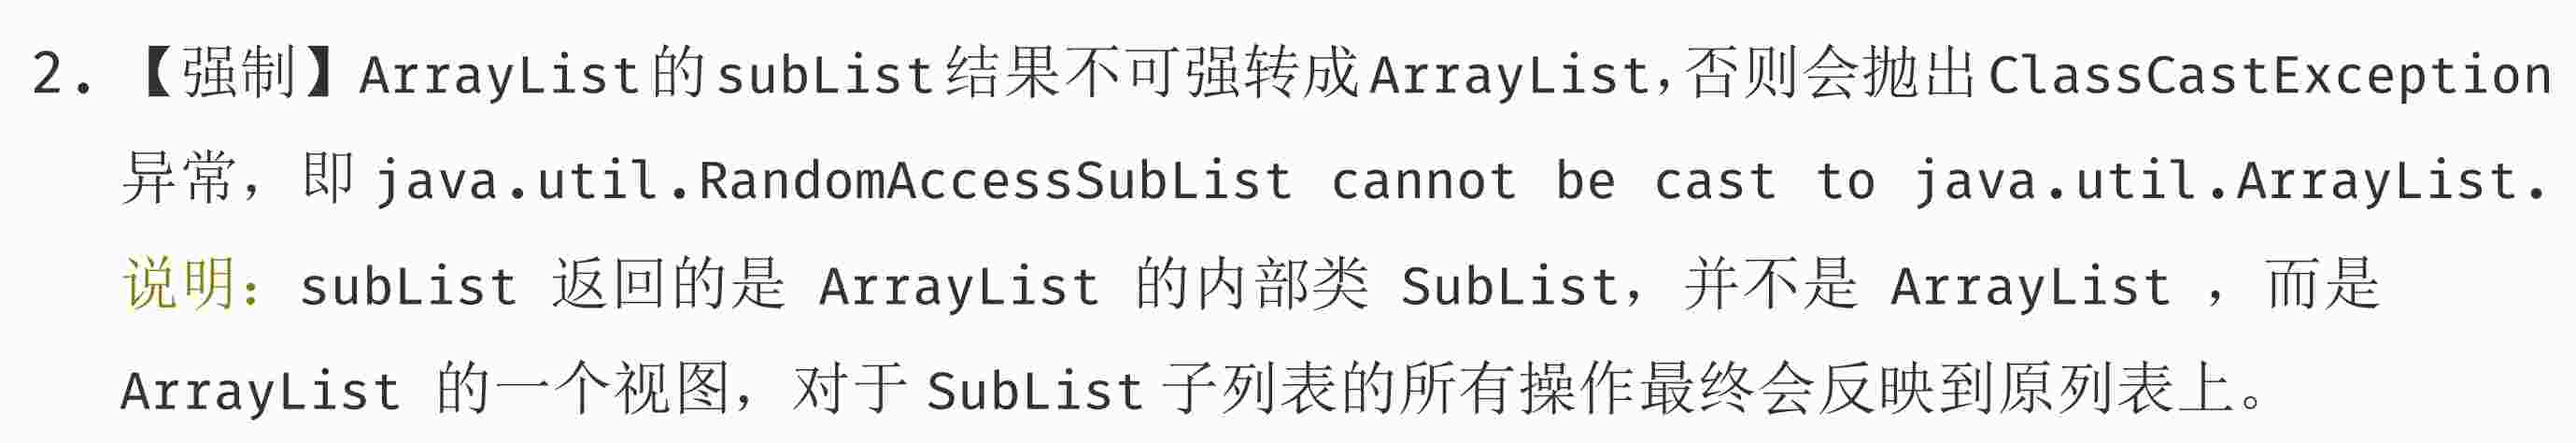 为什么阿里要慎重使用ArrayList中的subList方法